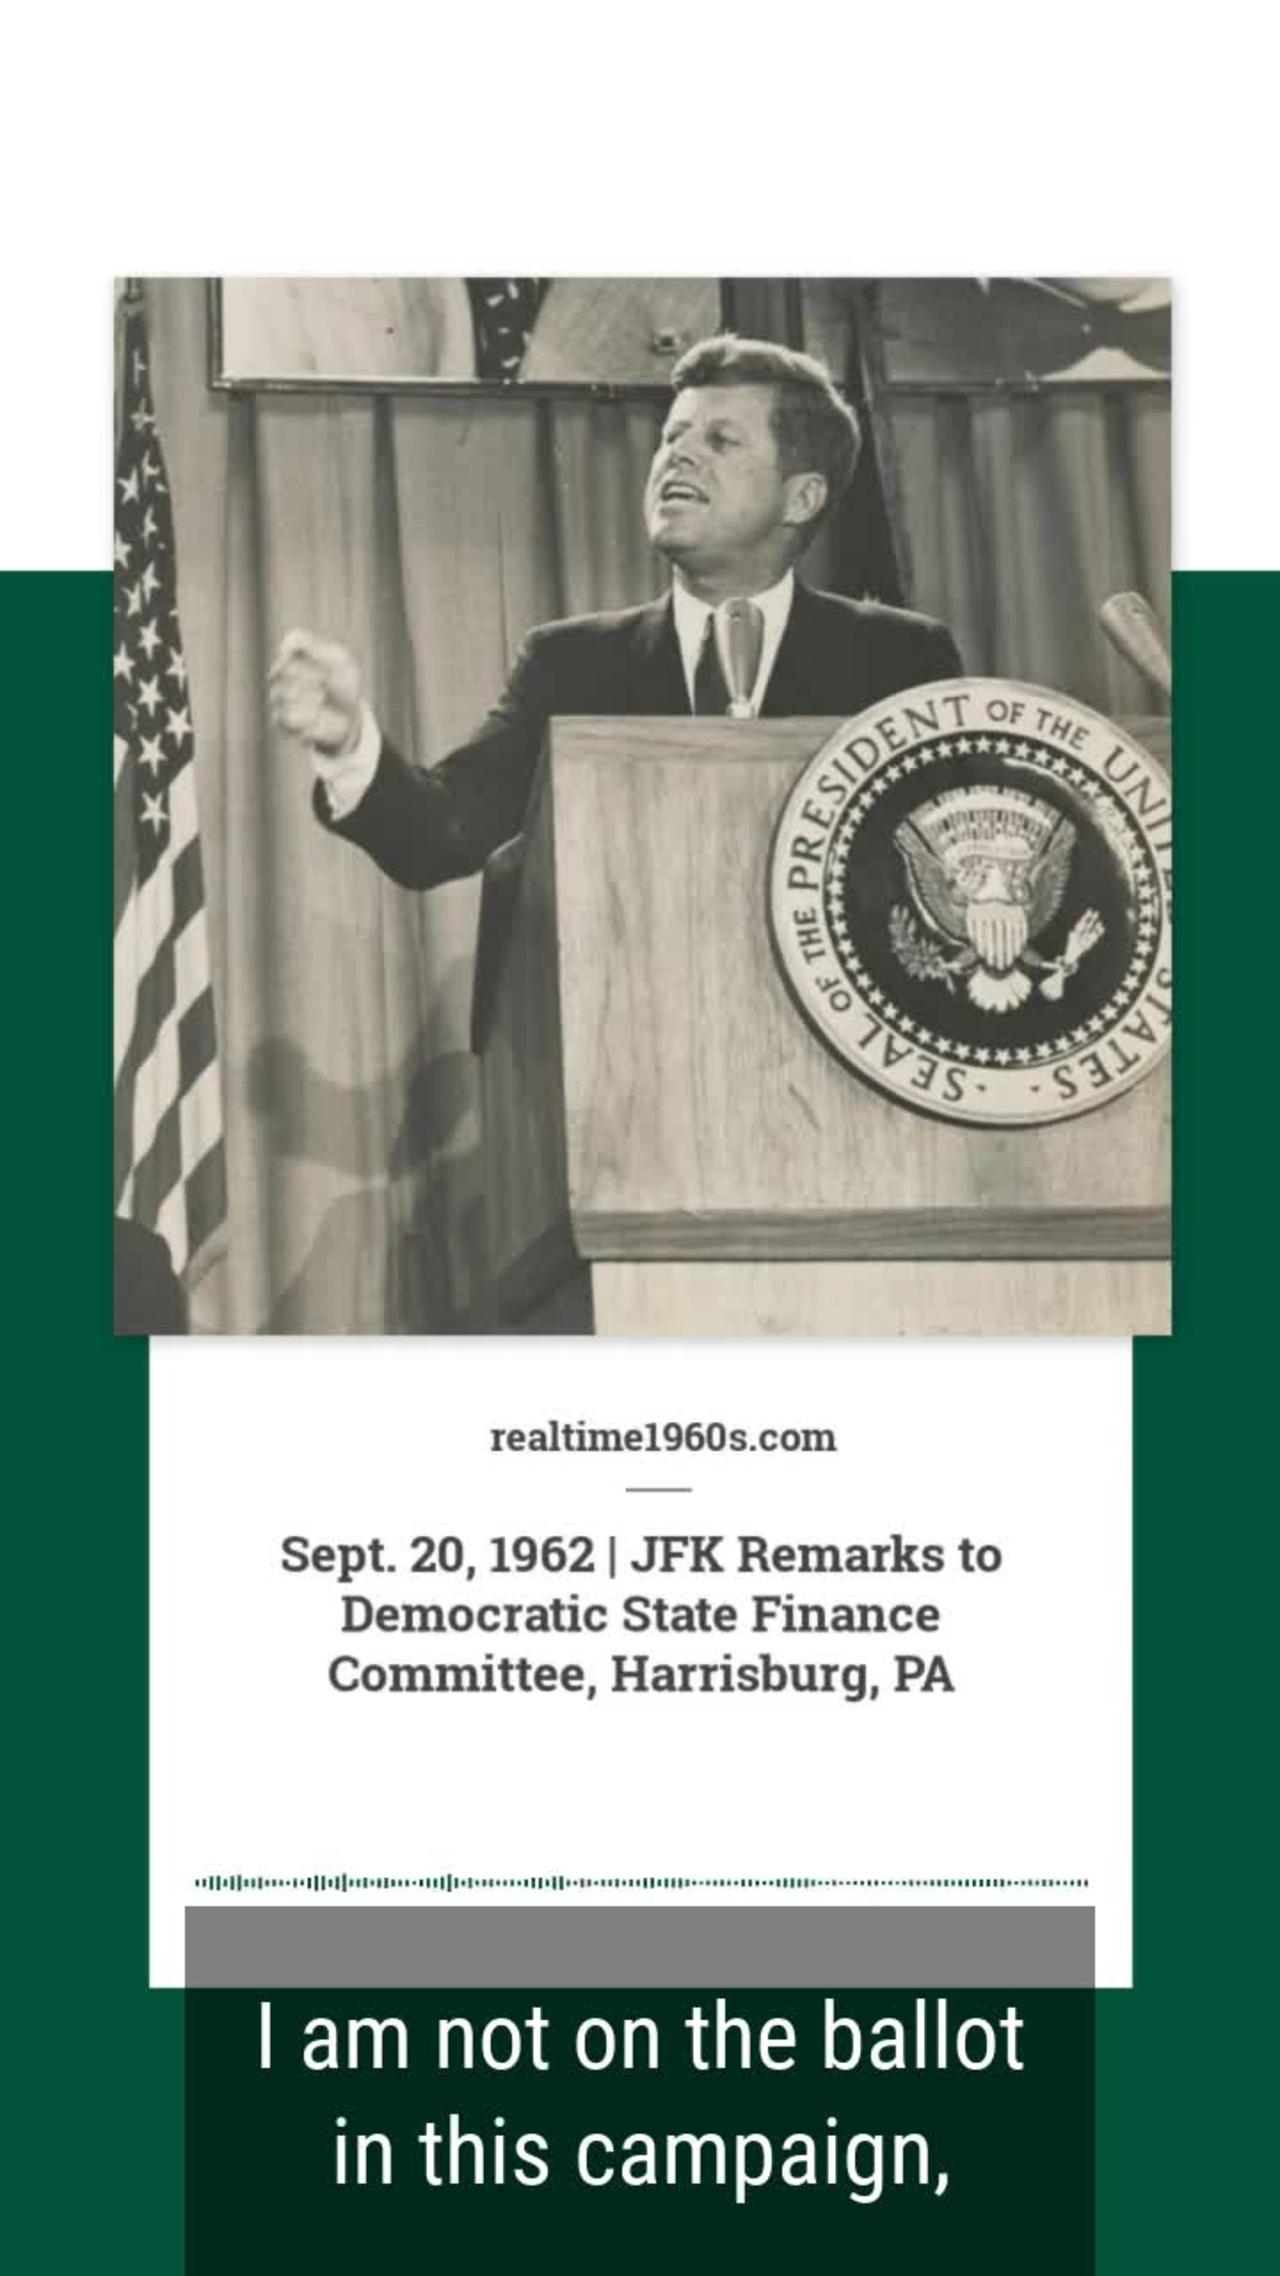 Sept. 20, 1962 - JFK Speech in Harrisburg, PA